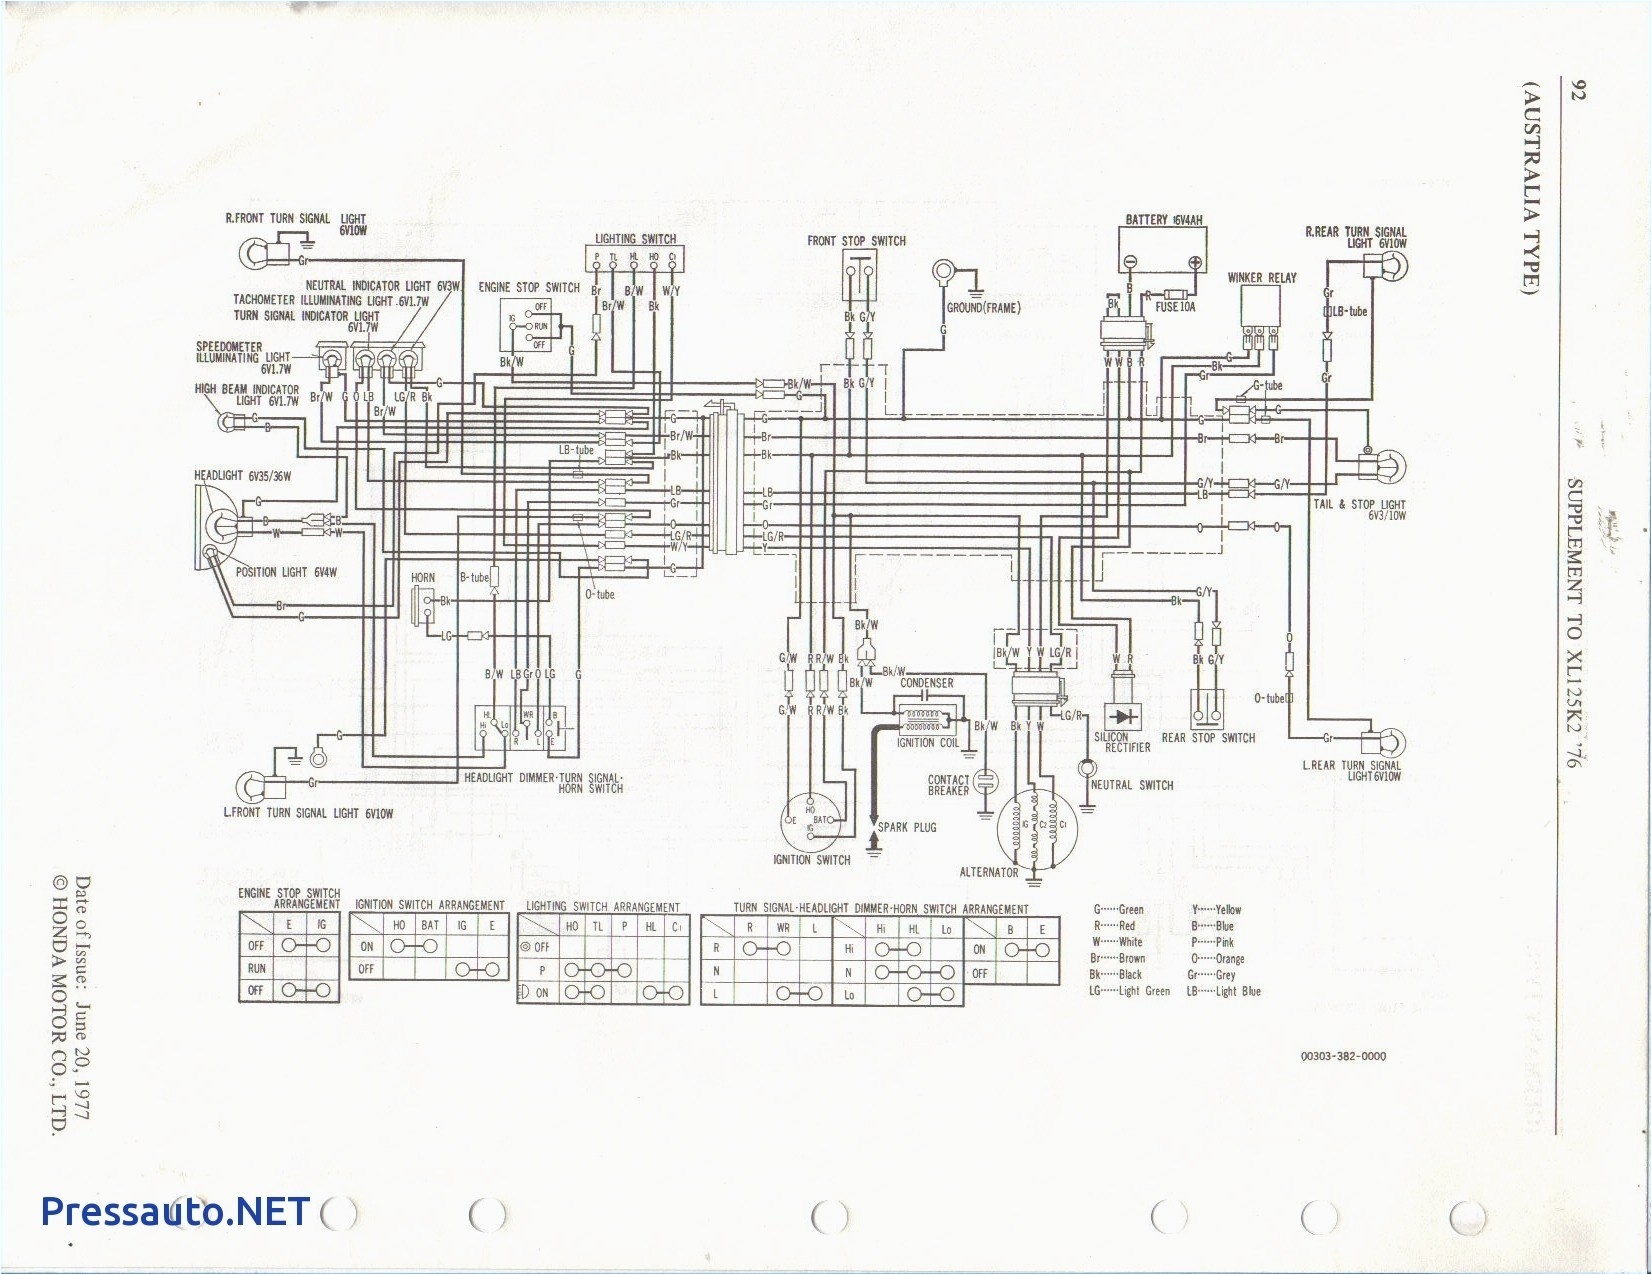 xl125 wiring diagram wiring diagram show 1978 xl 125 wiring diagram xl125 wiring diagram